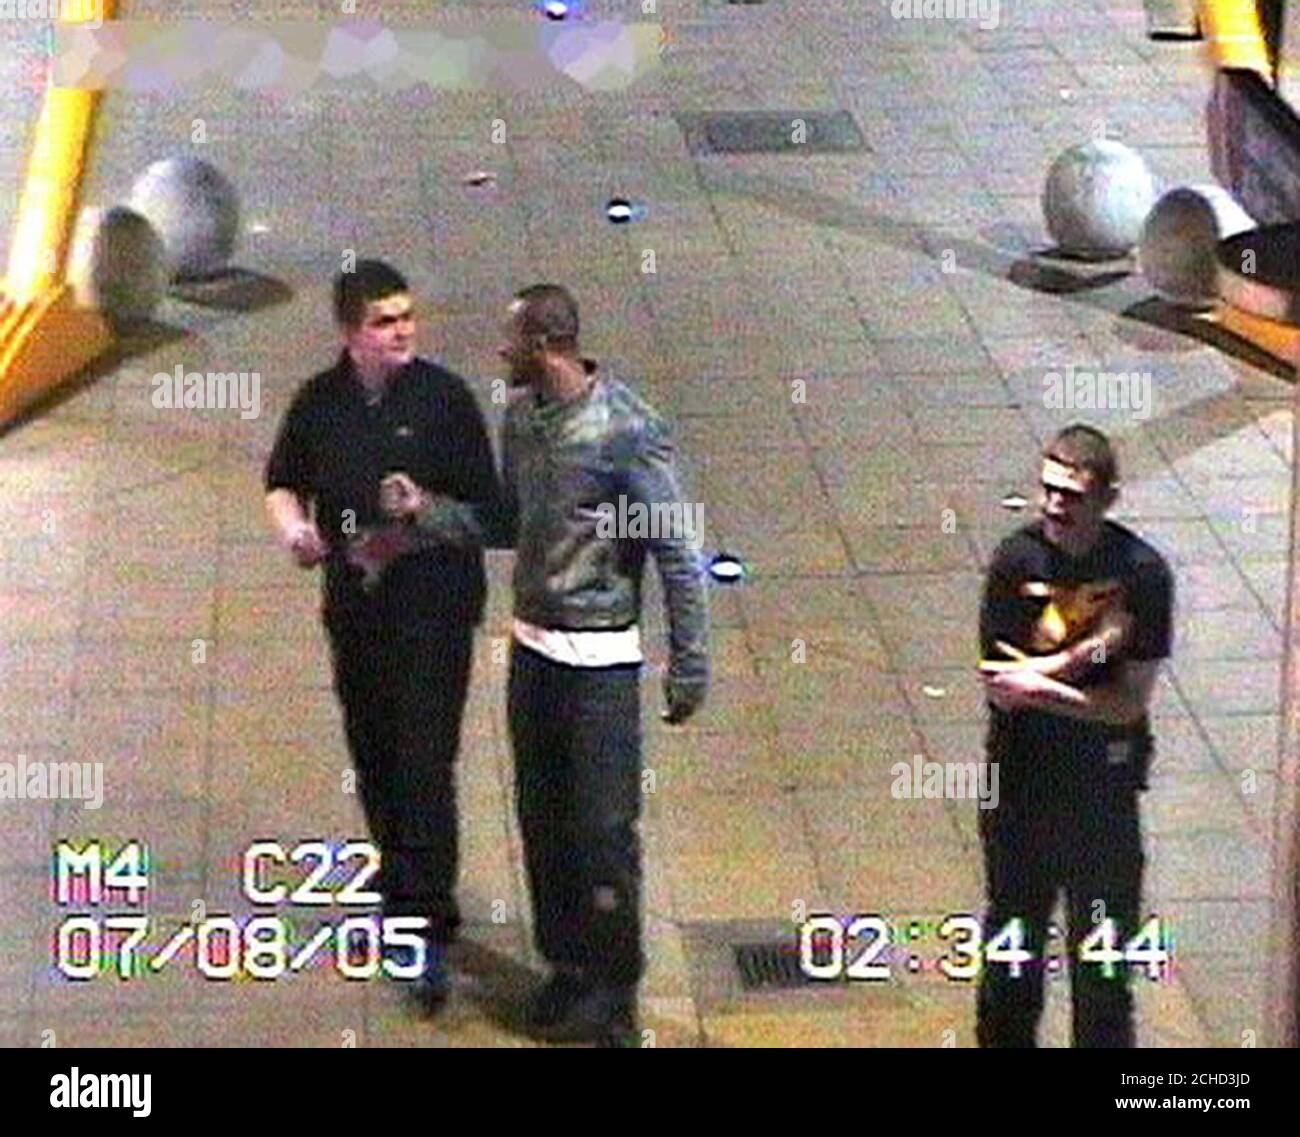 Metropolitan Police CCTV immagine datata 08/07/2005 di (da sinistra a destra): Timmy Sullivan, 19, da Barking, Essex; Michael Onokah, 25, di Ilford, Londra Est e Michael Lynch, 17, di Stratford, Londra Est. Foto Stock